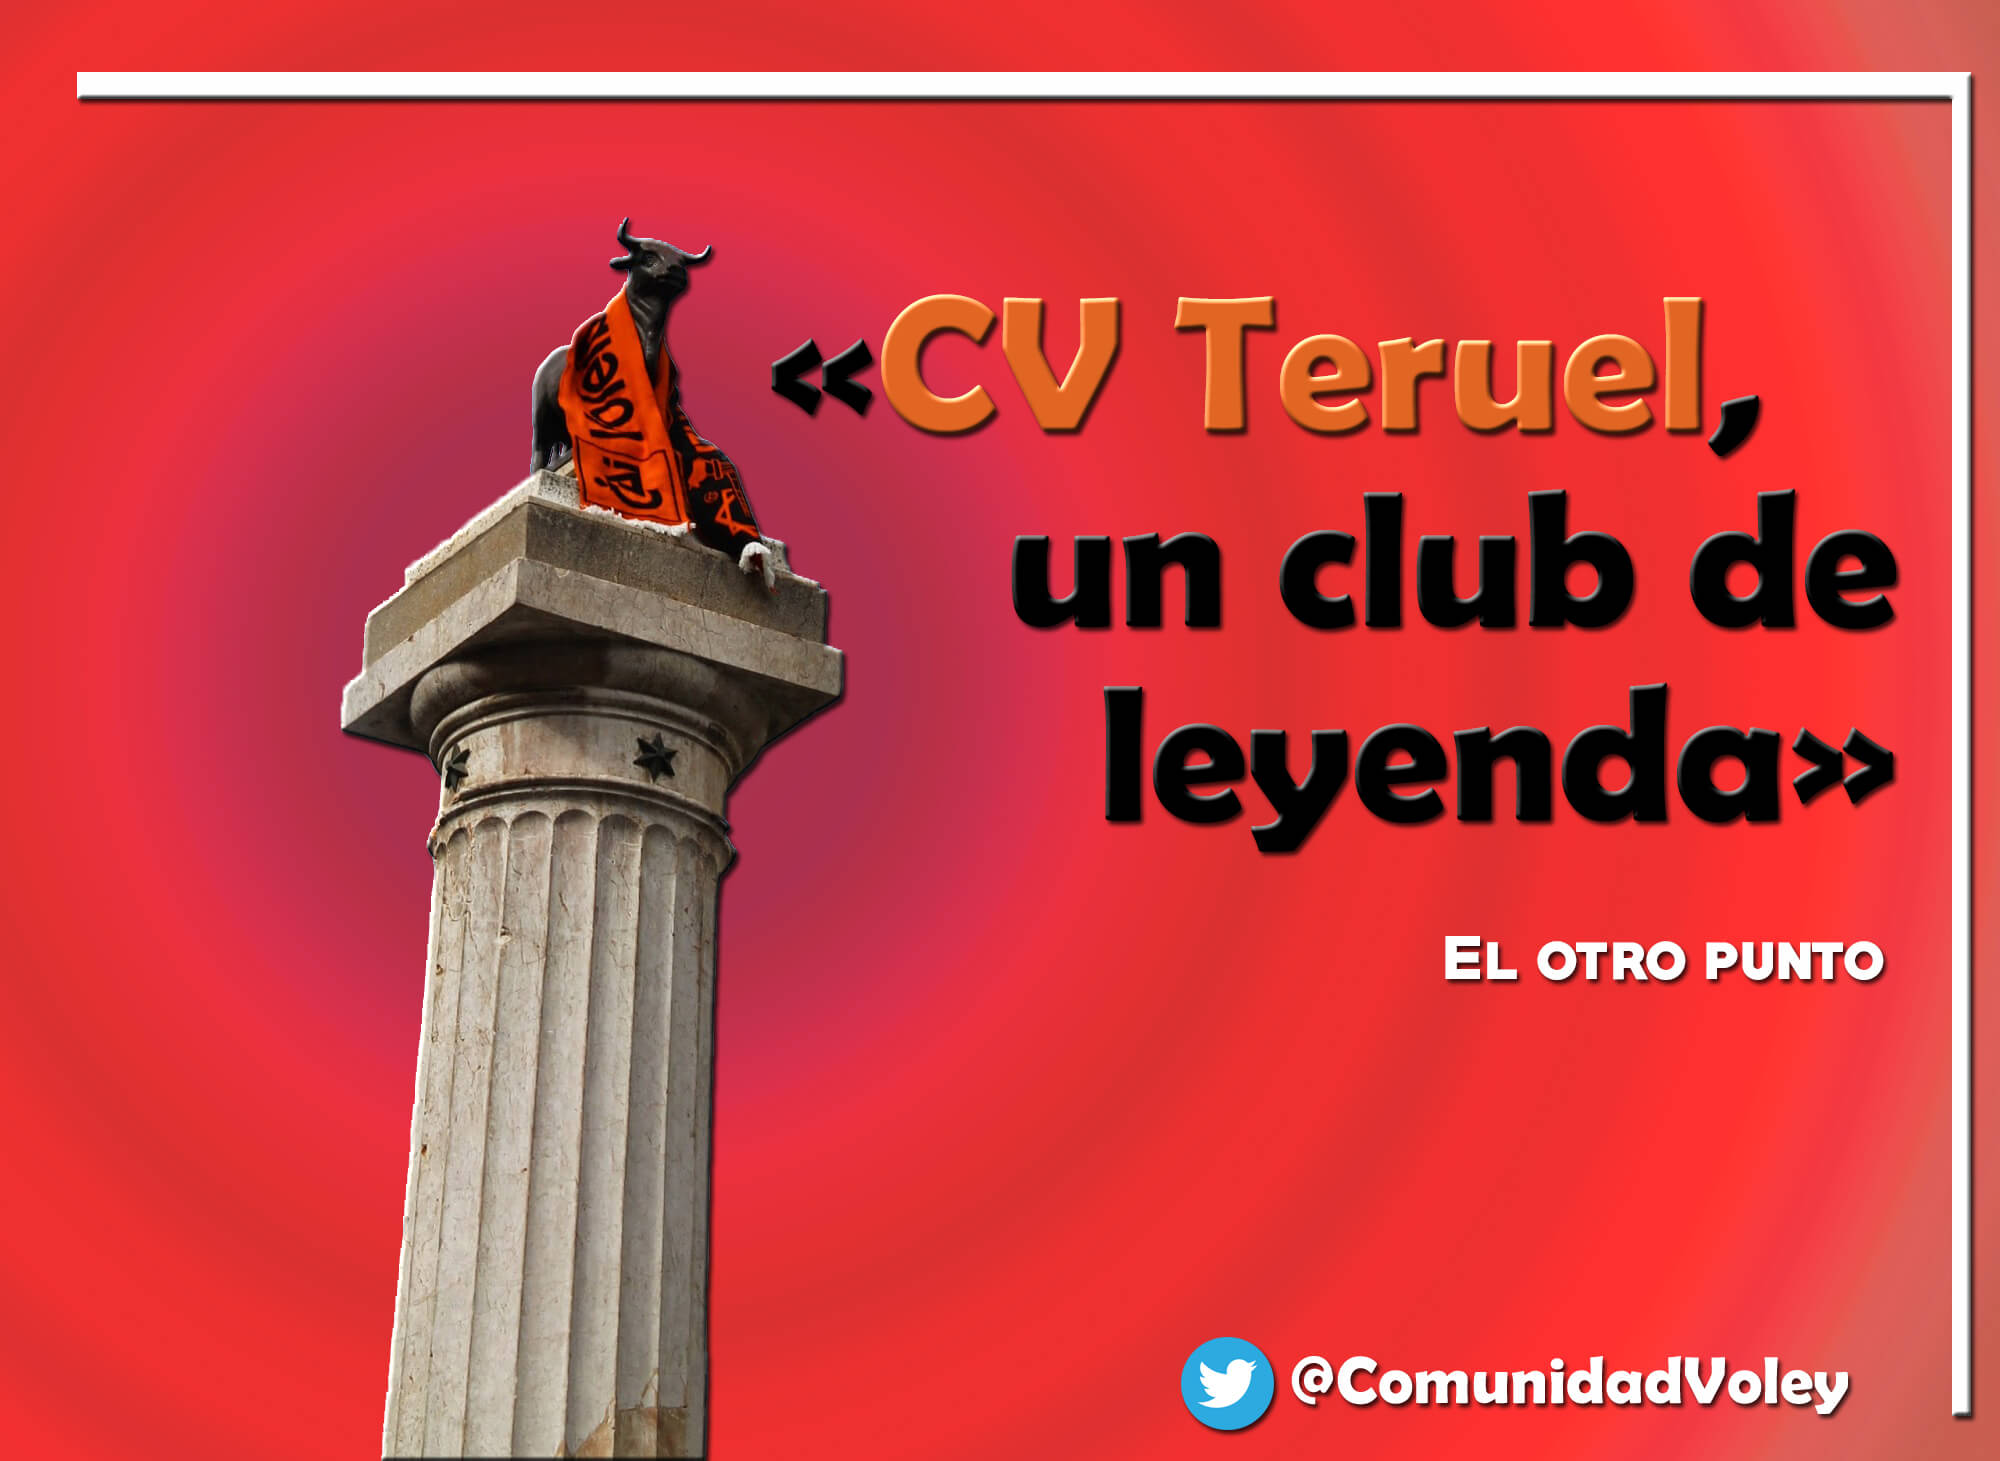 EL OTRO PUNTO: C.V. Teruel, un club de leyenda